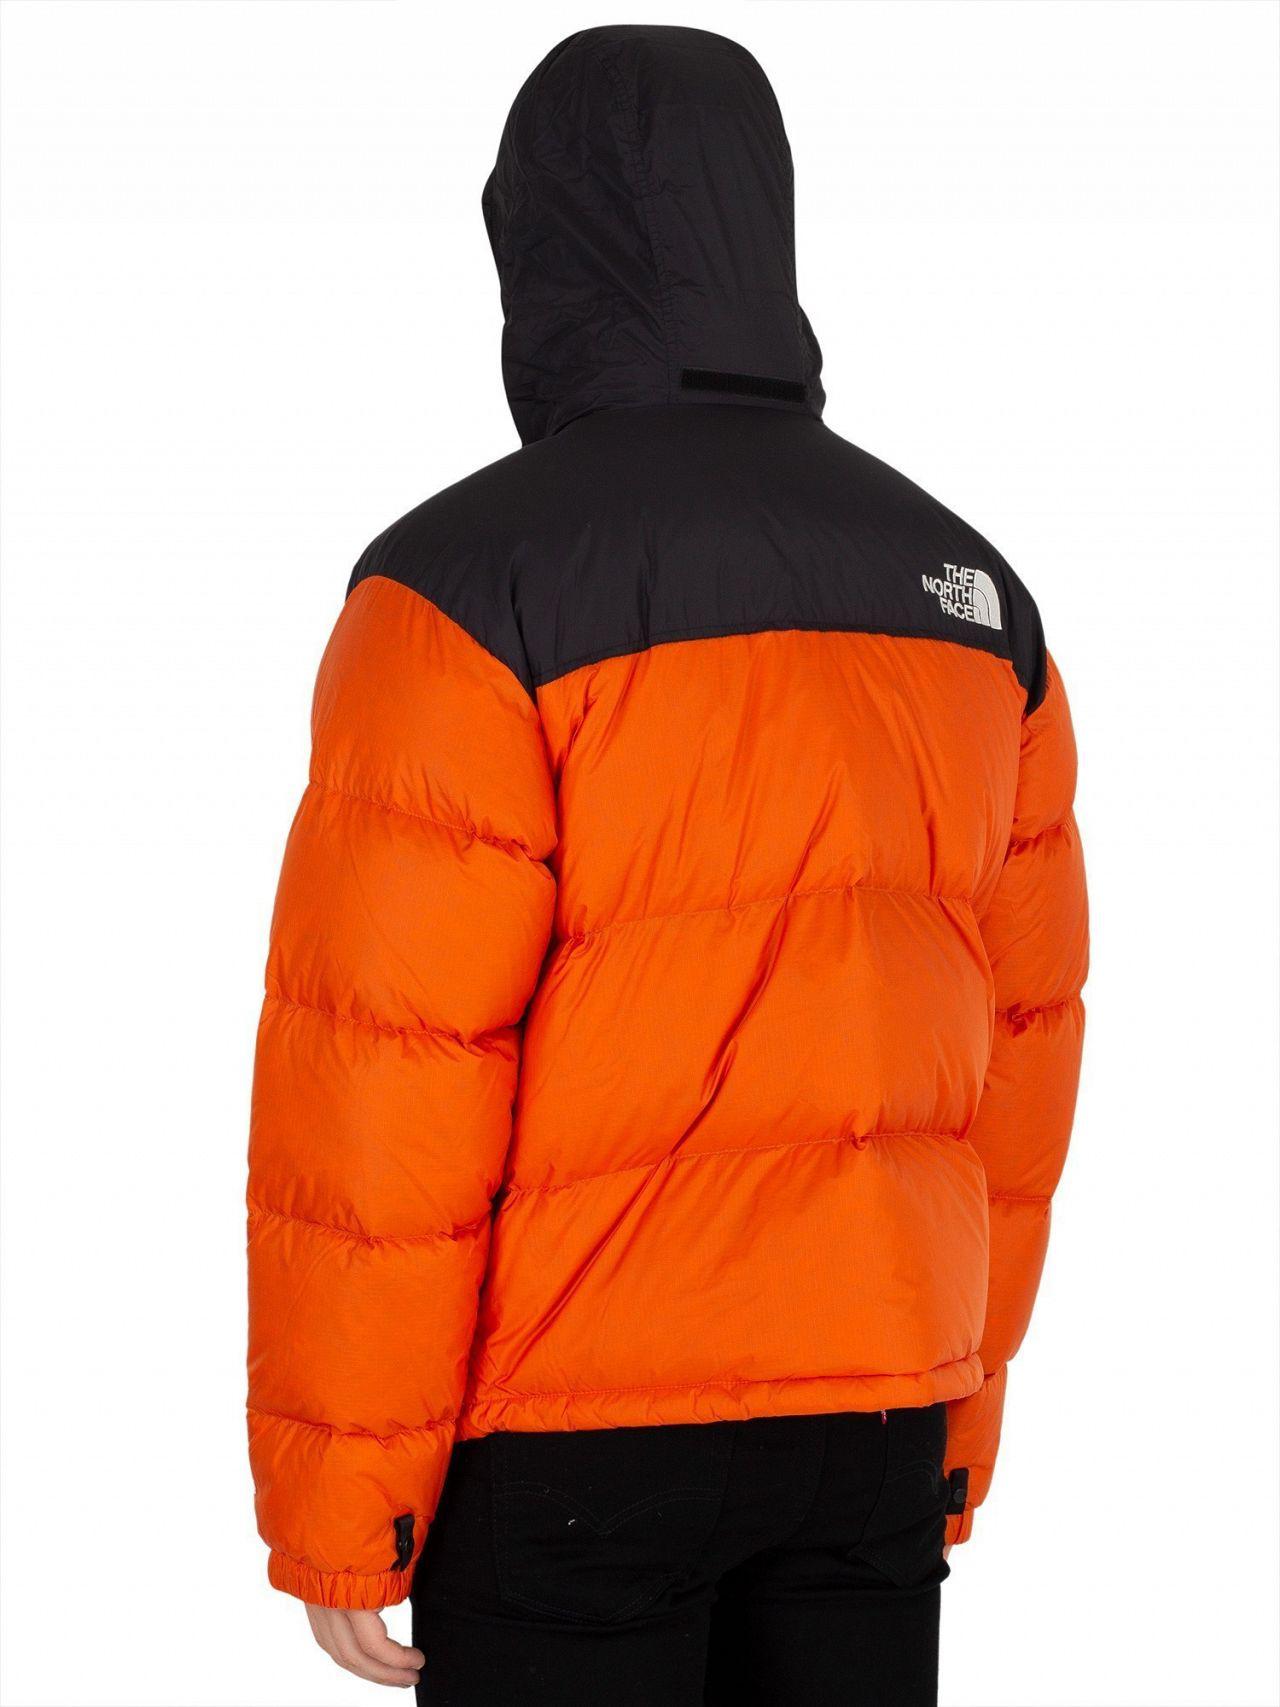 1996 retro nuptse jacket persian orange